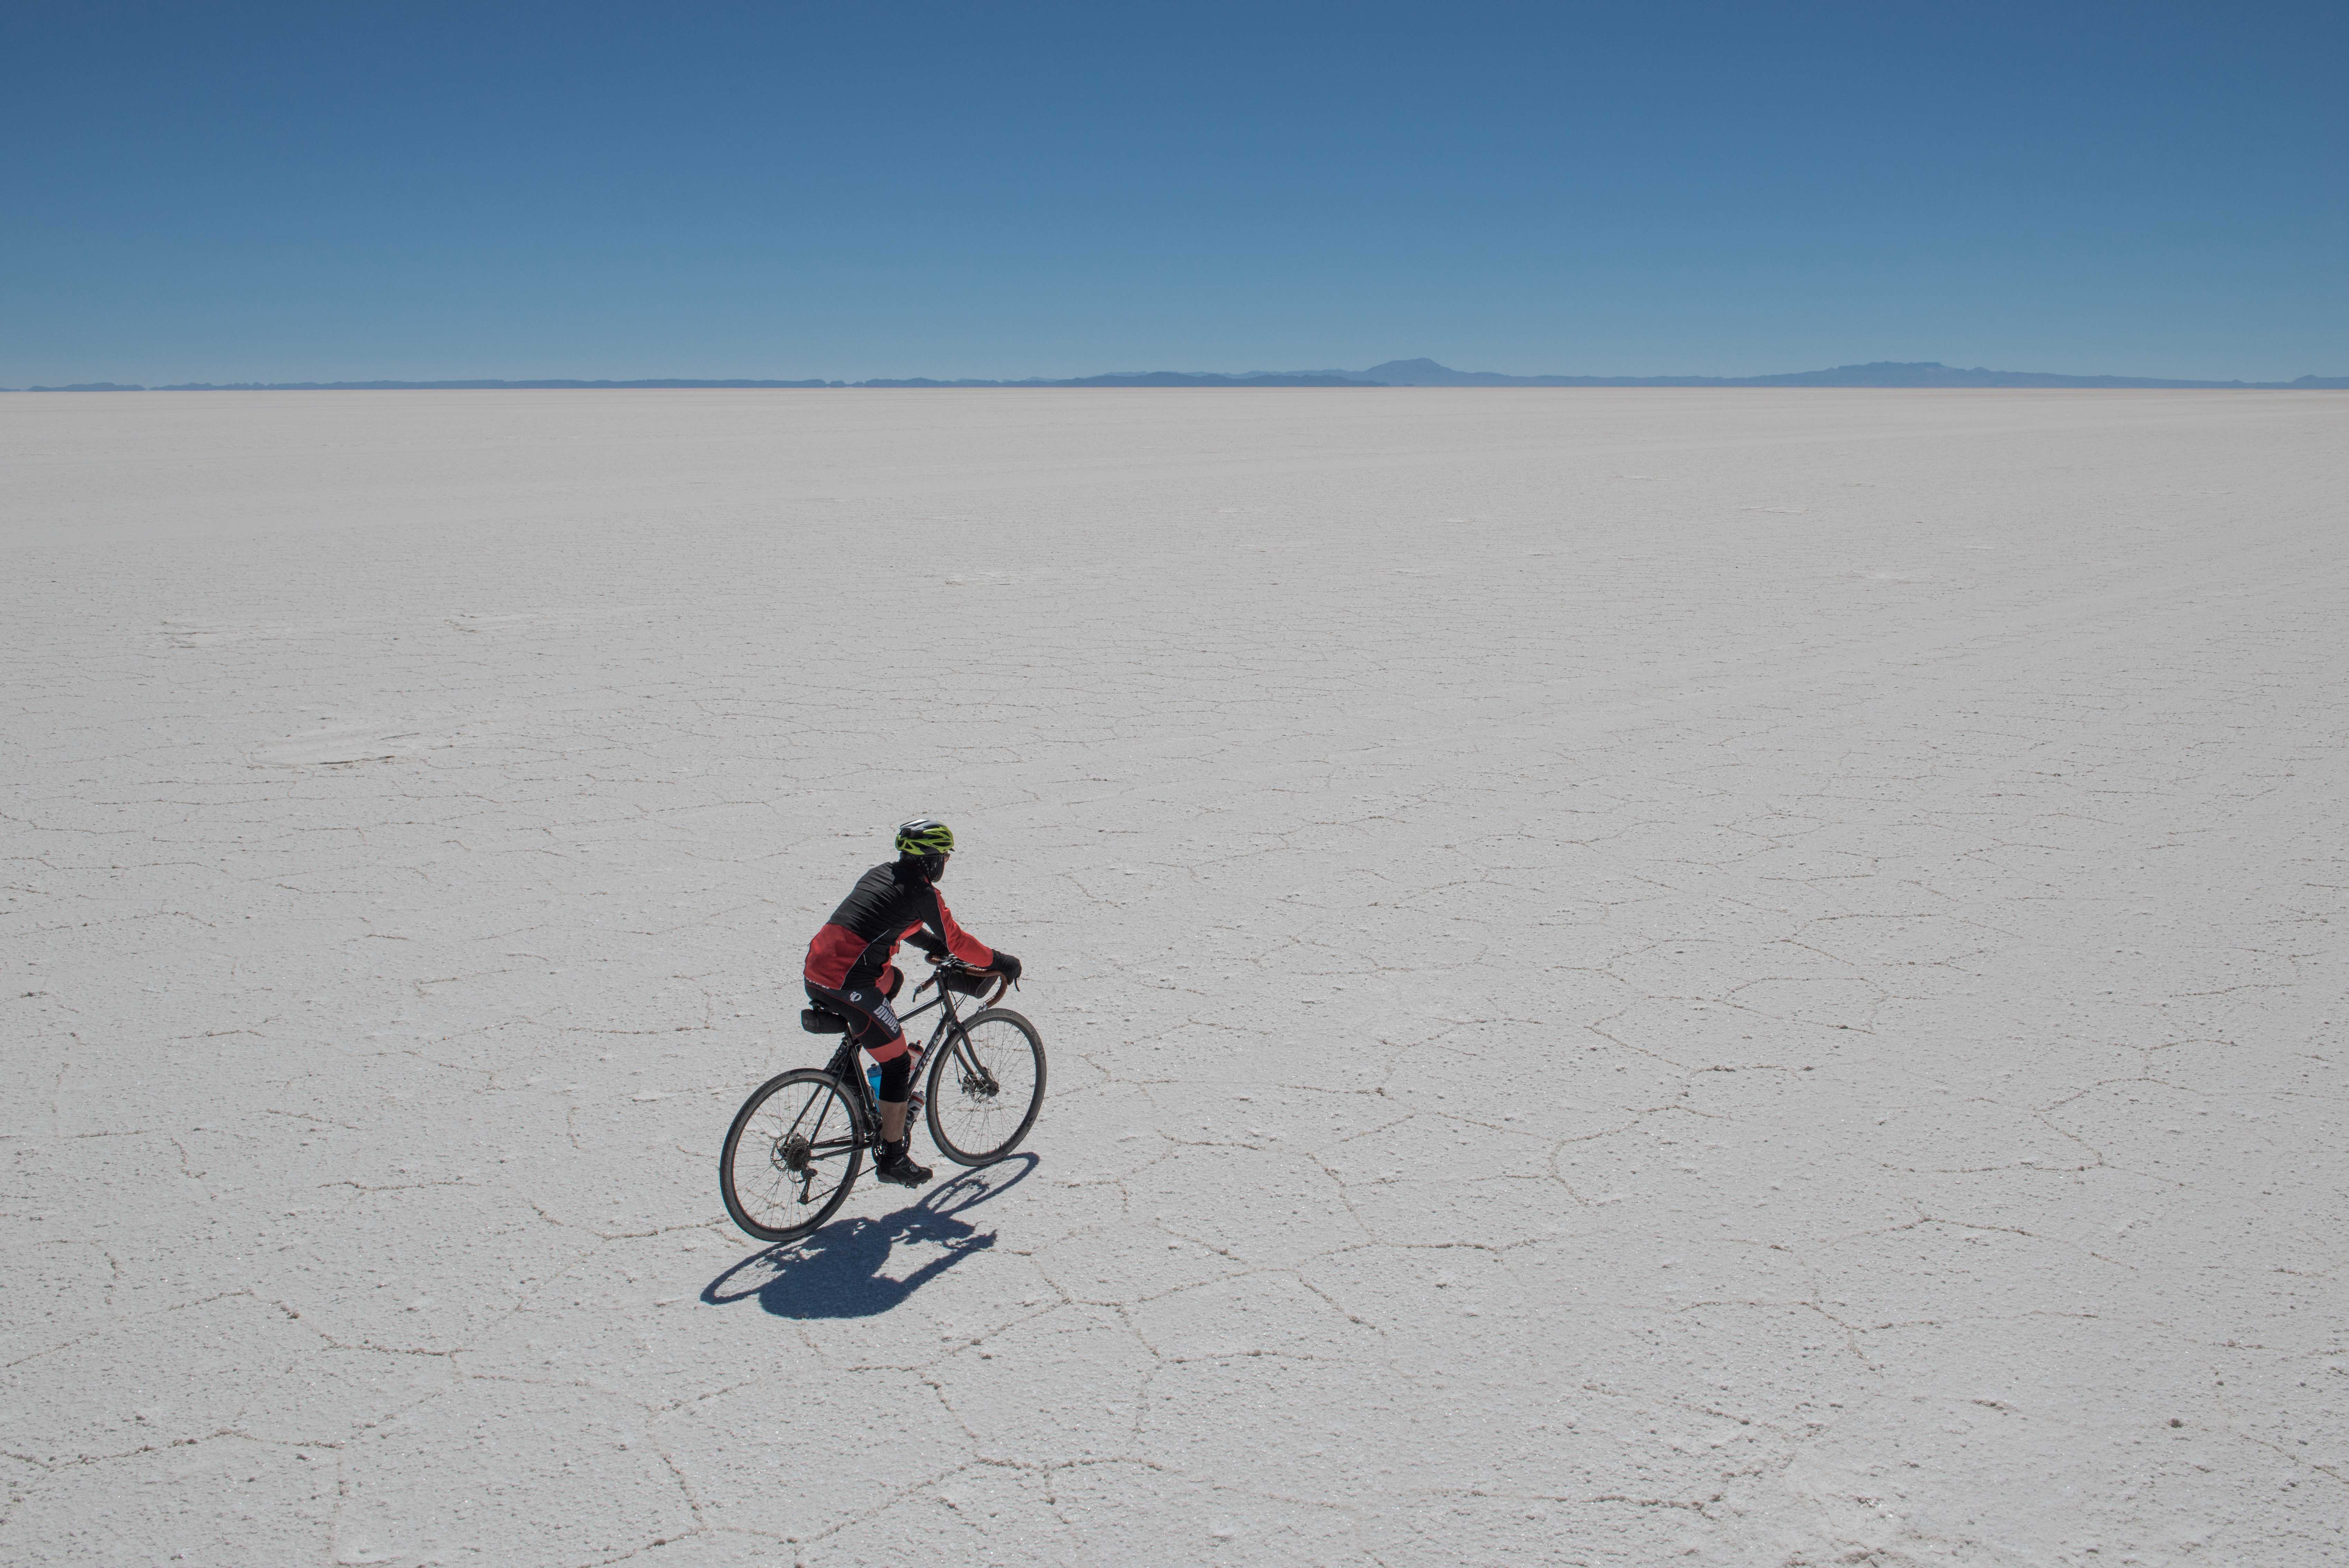 Att cykla i en saltöken hör inte till det vanligaste, men på TDA:s cykelresa är det just det som väntar när man kommer till Bolivia.